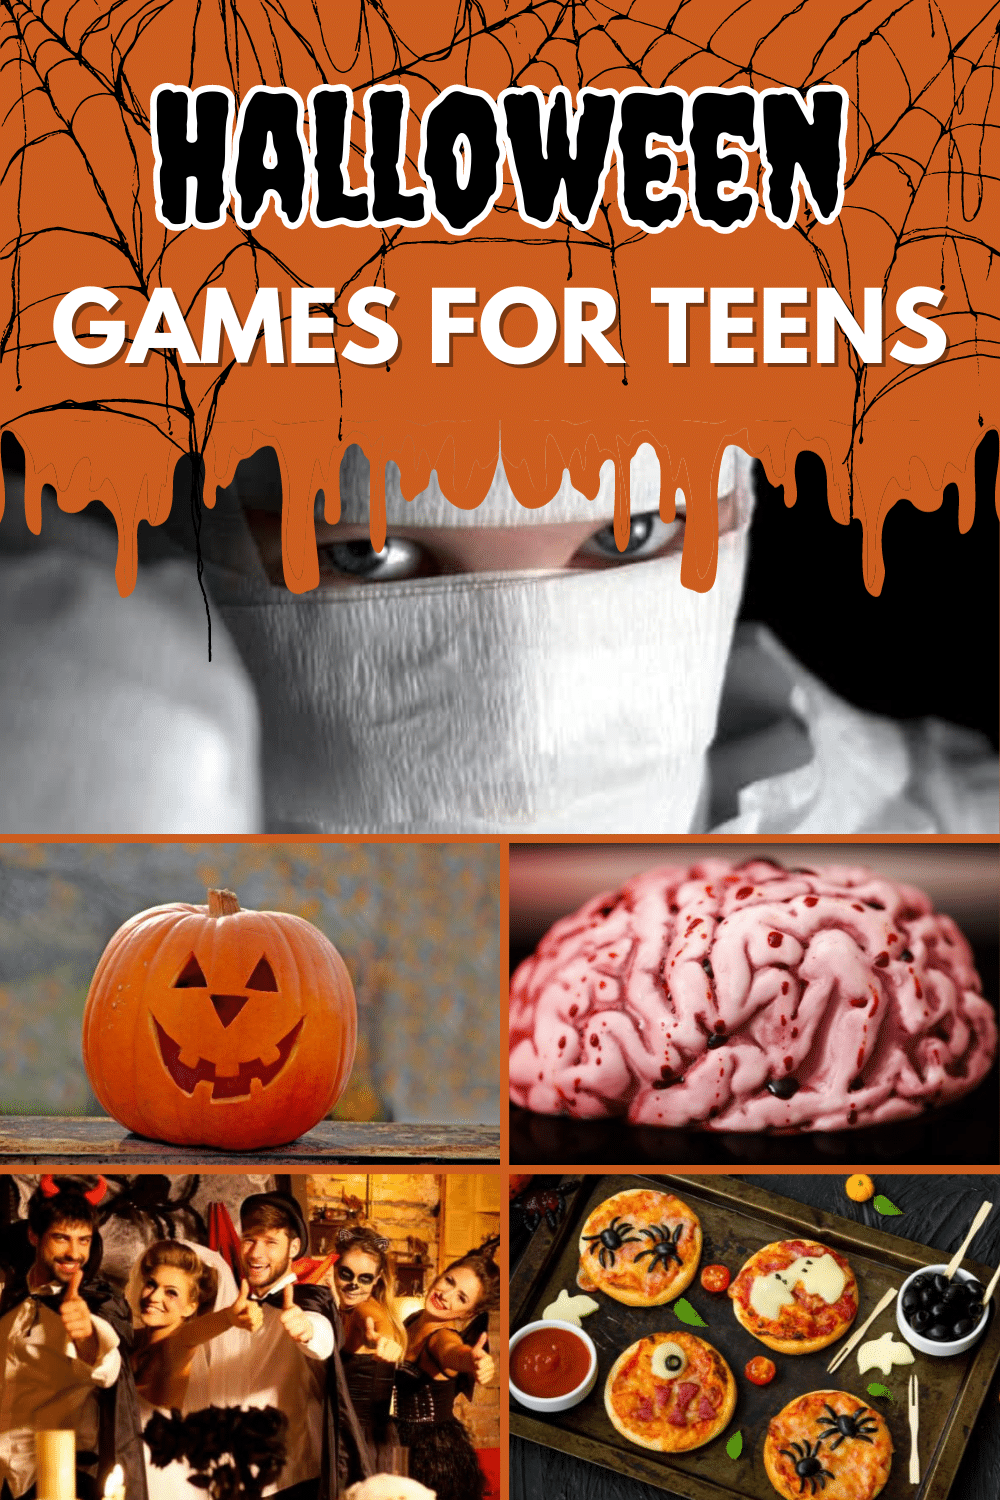 Spooky Halloween activities for teenagers.